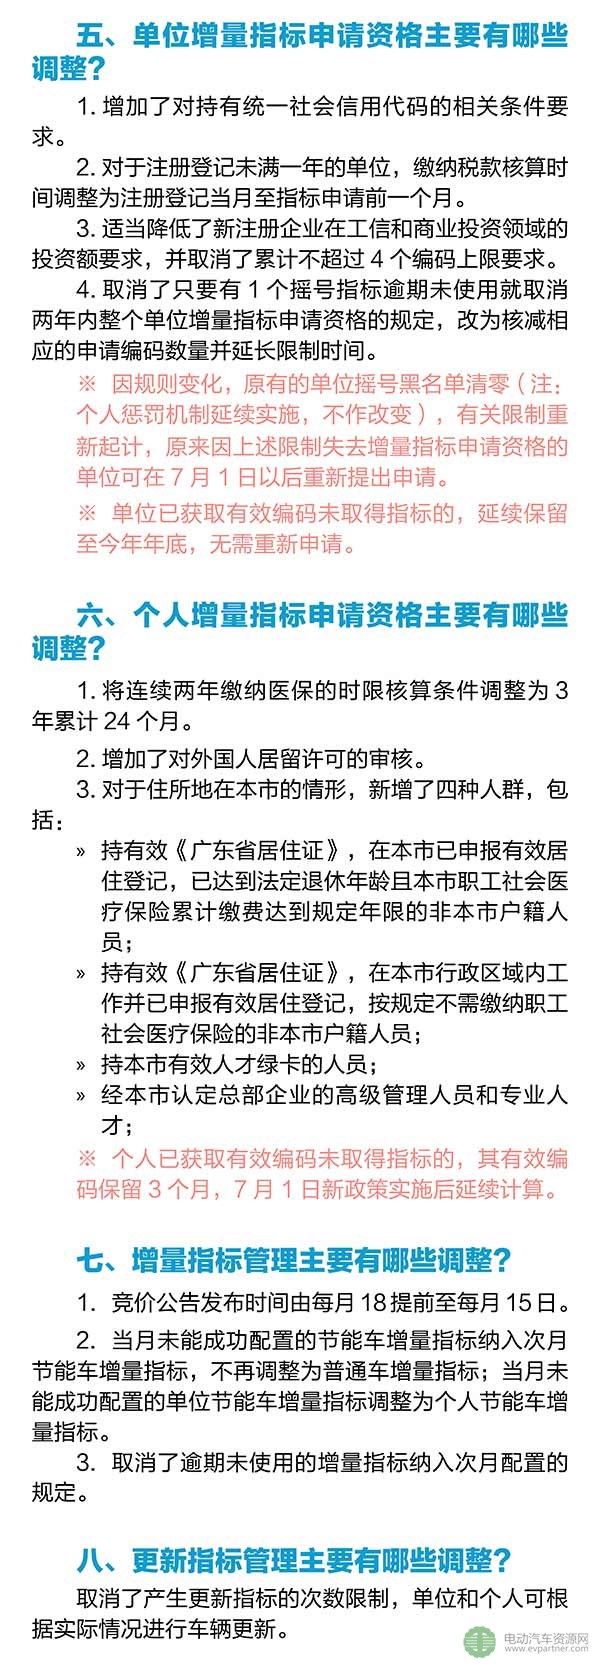 广州修订中小客车调控管理办法 7月起新能源车购置补贴另行制定